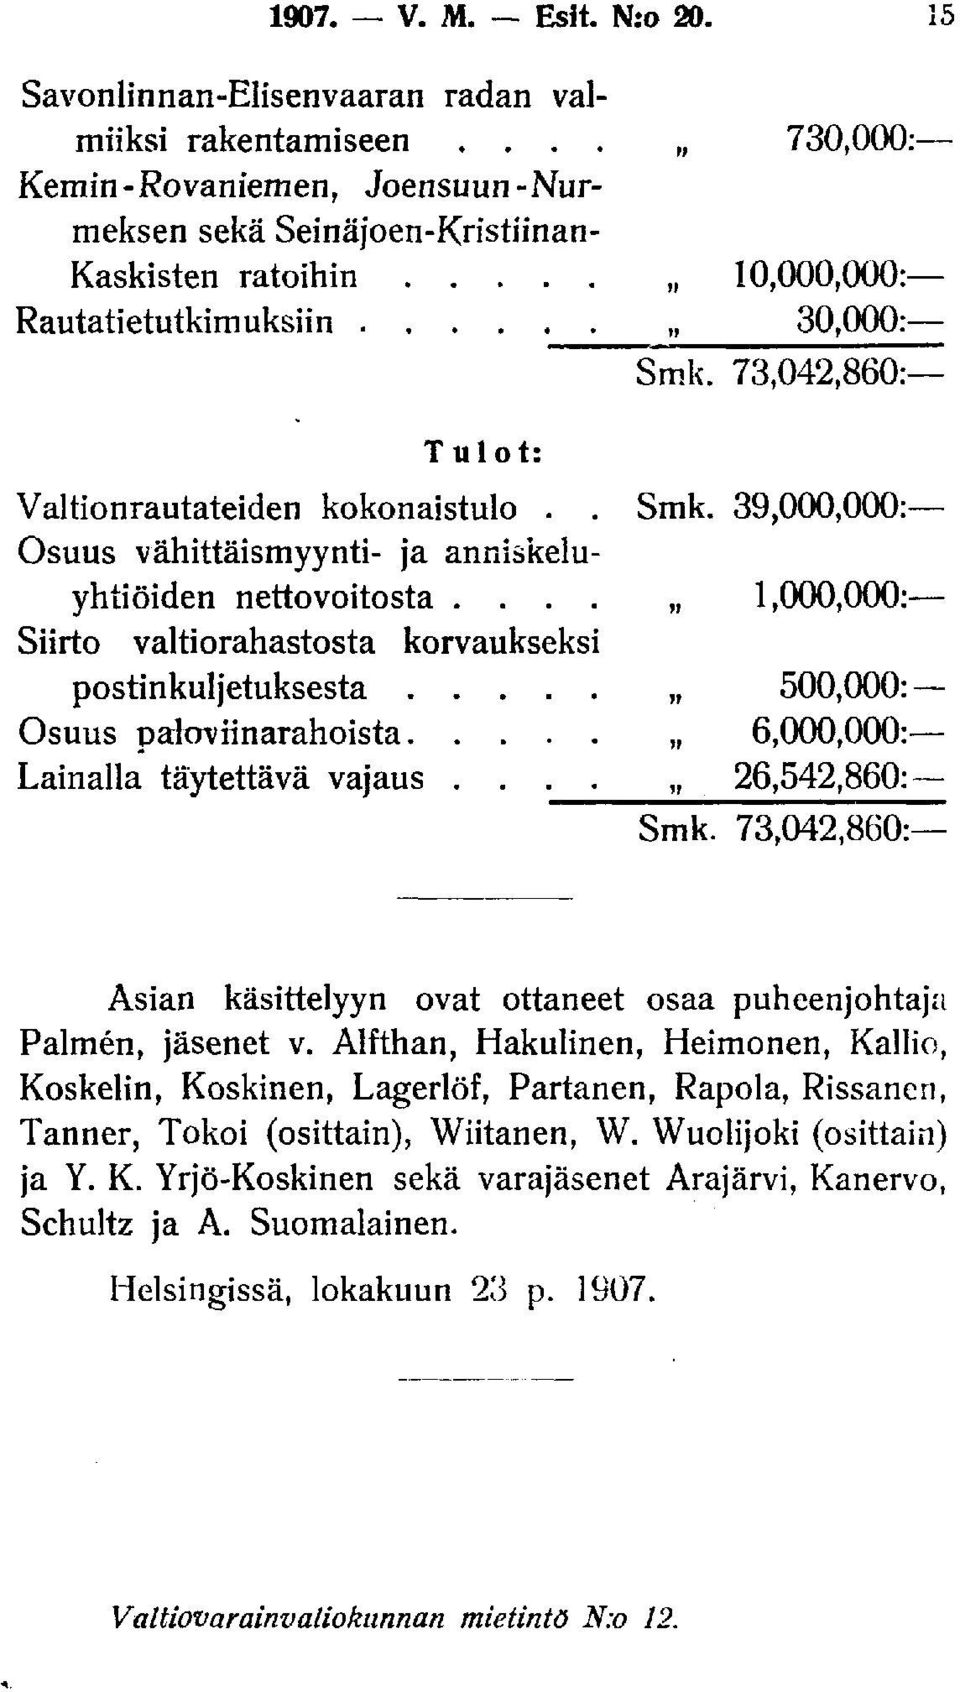 73,042,860: Tulot: Valtionrautateiden kokonaistulo.. Smk. 39,000,000: Osuus vähittäismyynti- ja anniskeluyhtiöiden nettovoitosta.